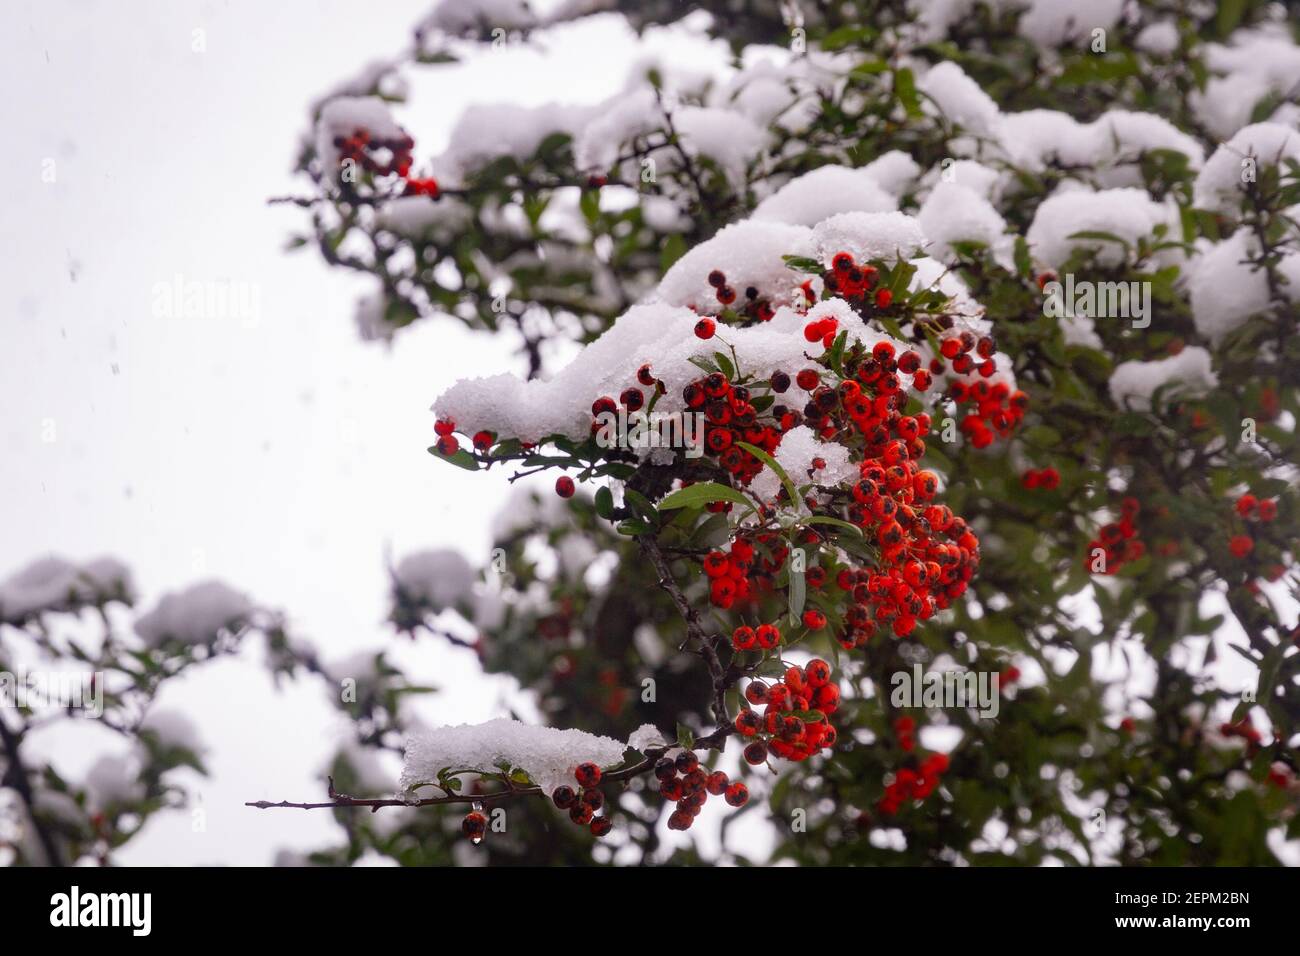 Detalle de algunas bayas rojas en una rama en un árbol cubierto de nieve Foto de stock